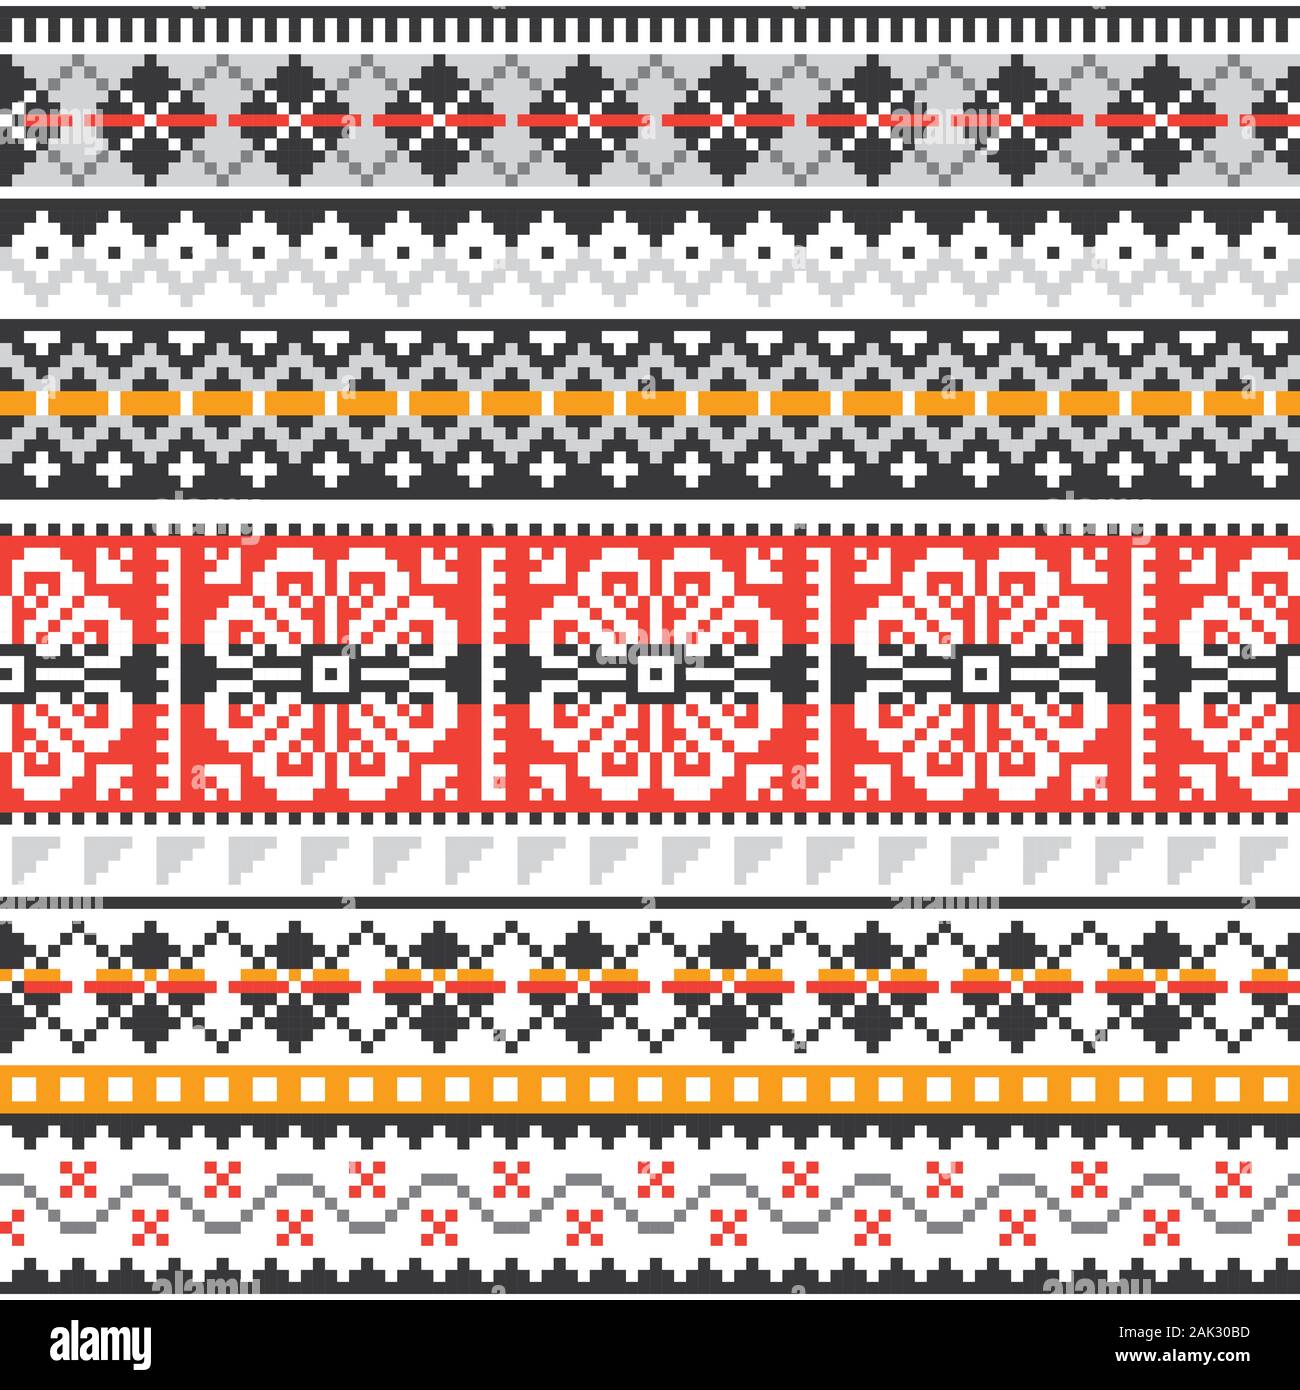 Fair Isle maglia vettore tradizionale seamless pattern, Scottush design ripetitivo, isole Shetland stile di tessitura Illustrazione Vettoriale